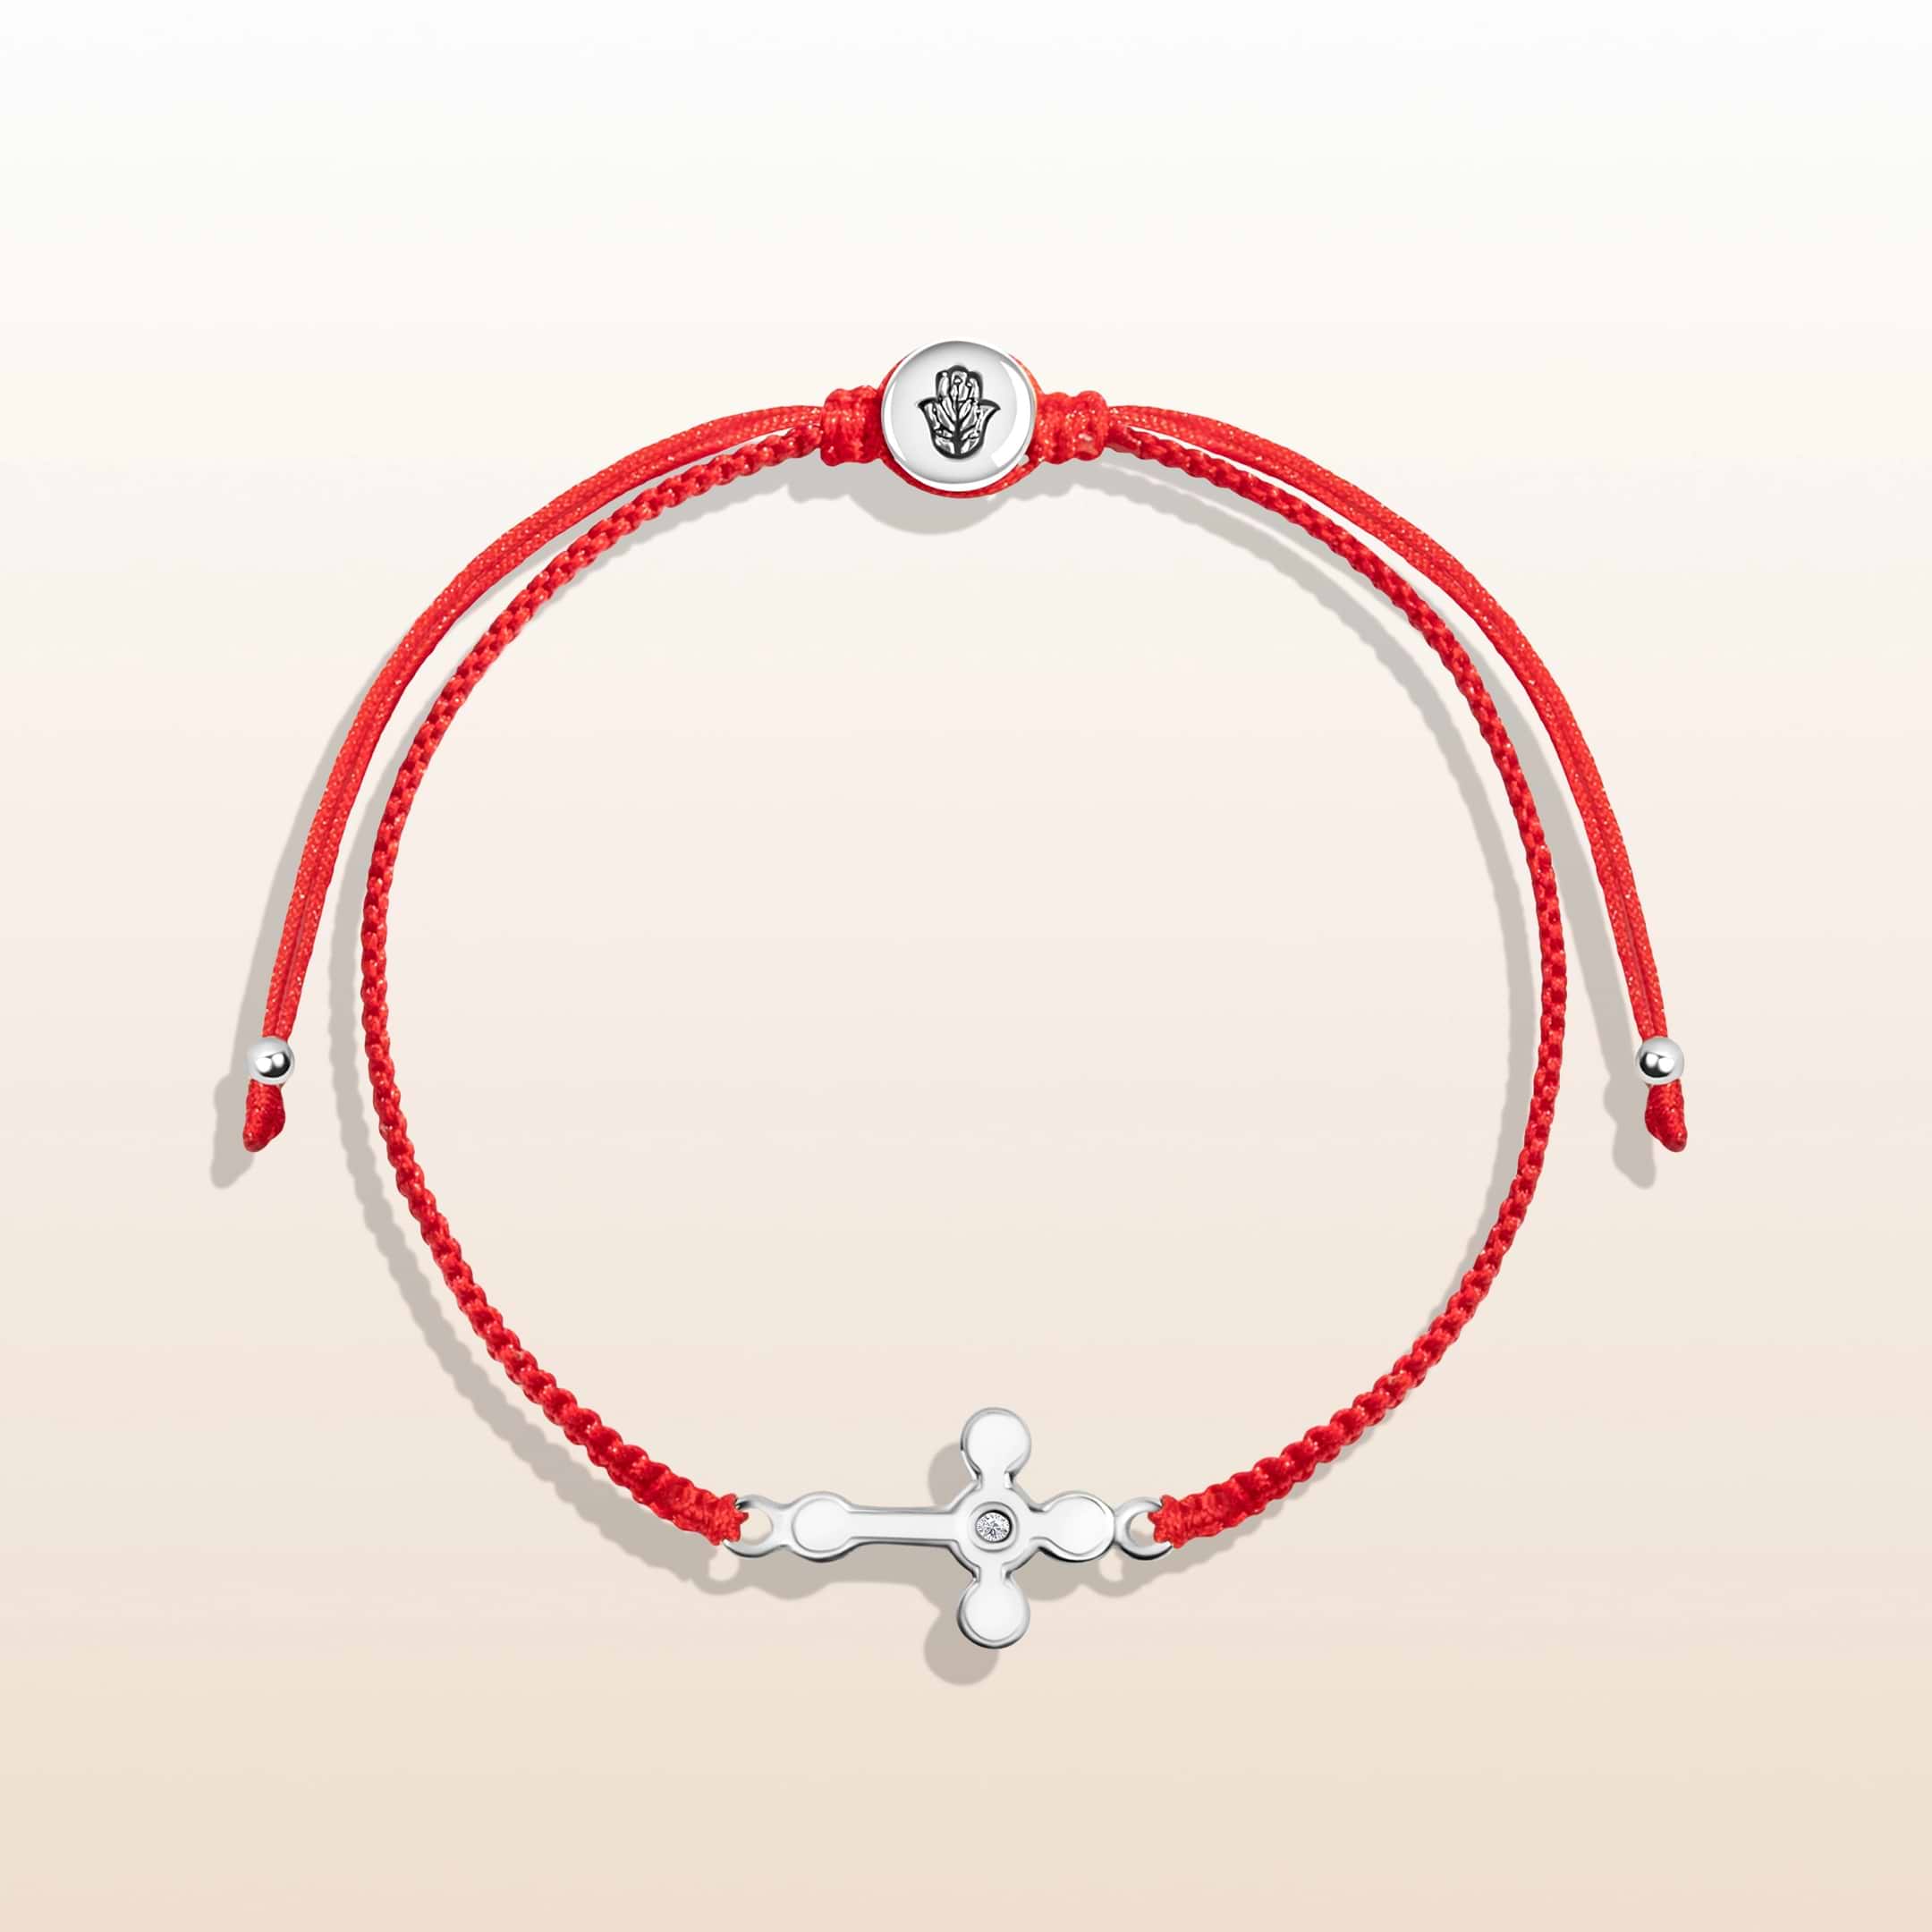 Spiritual Power Red String Cross Charm Bracelet